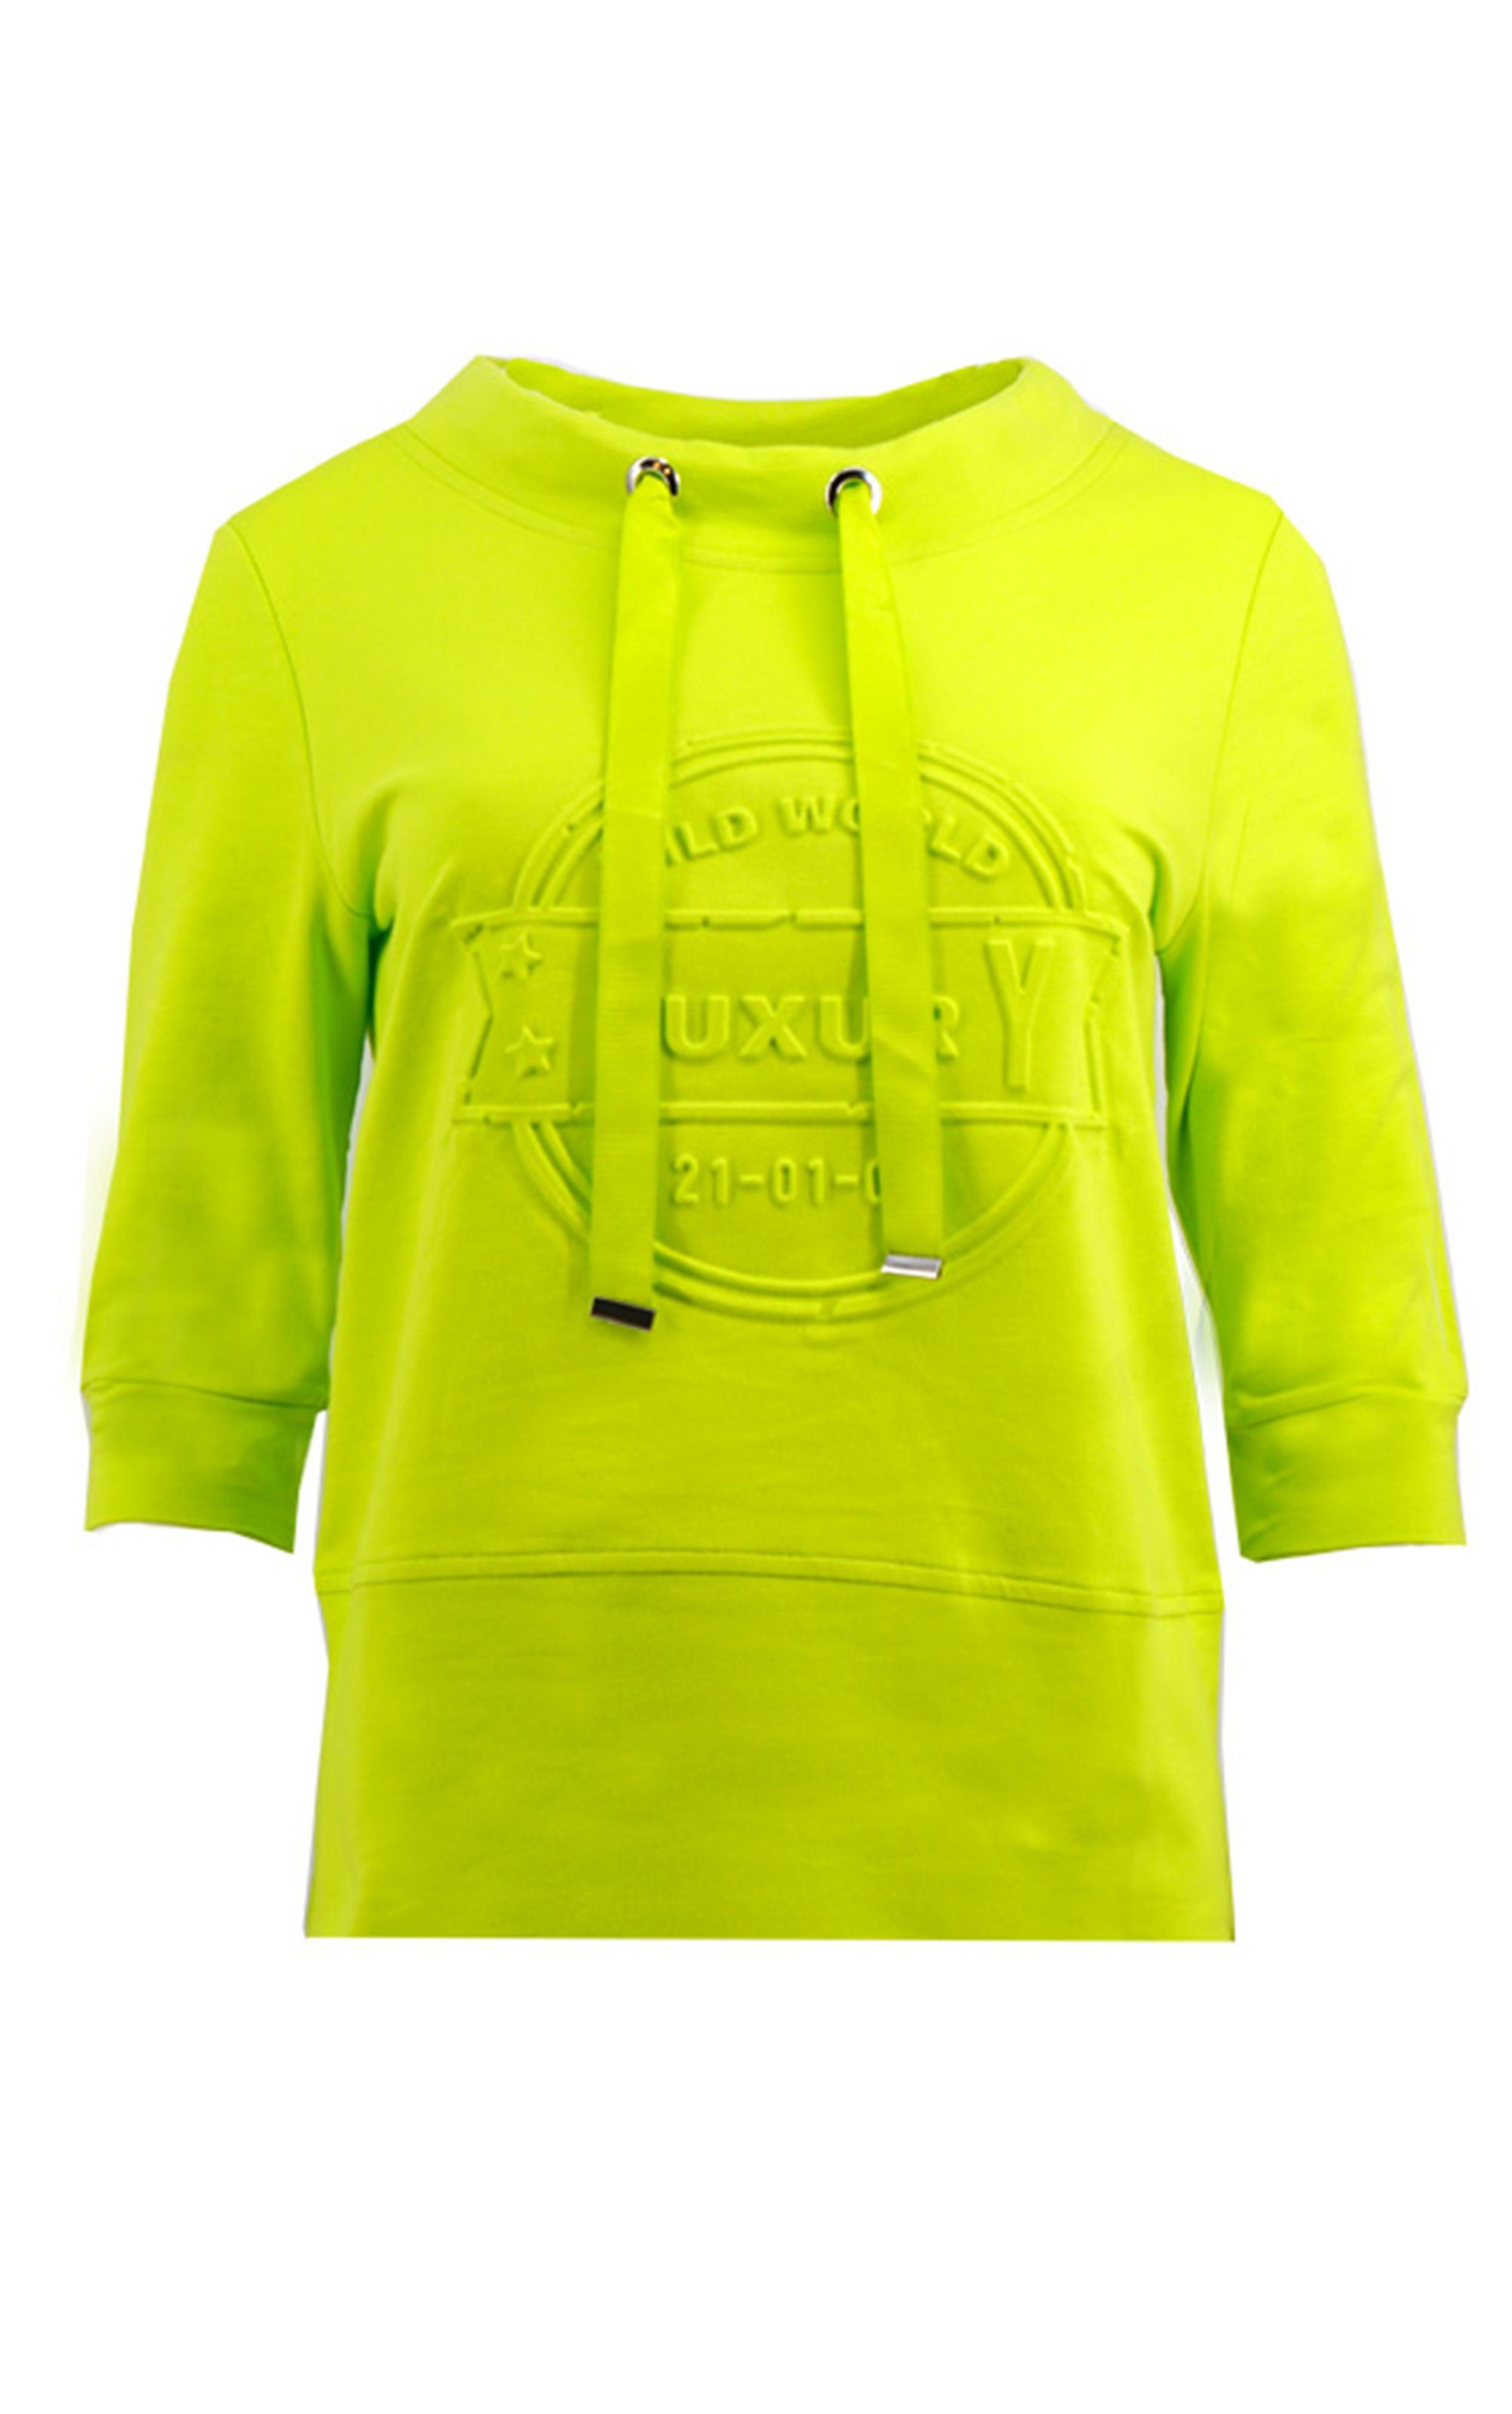 Passioni Sweatshirt Lime Sweatshirt mit 3/4 Ärmeln und 3D Luxury Schriftzug Breite Tunnelzugbänder